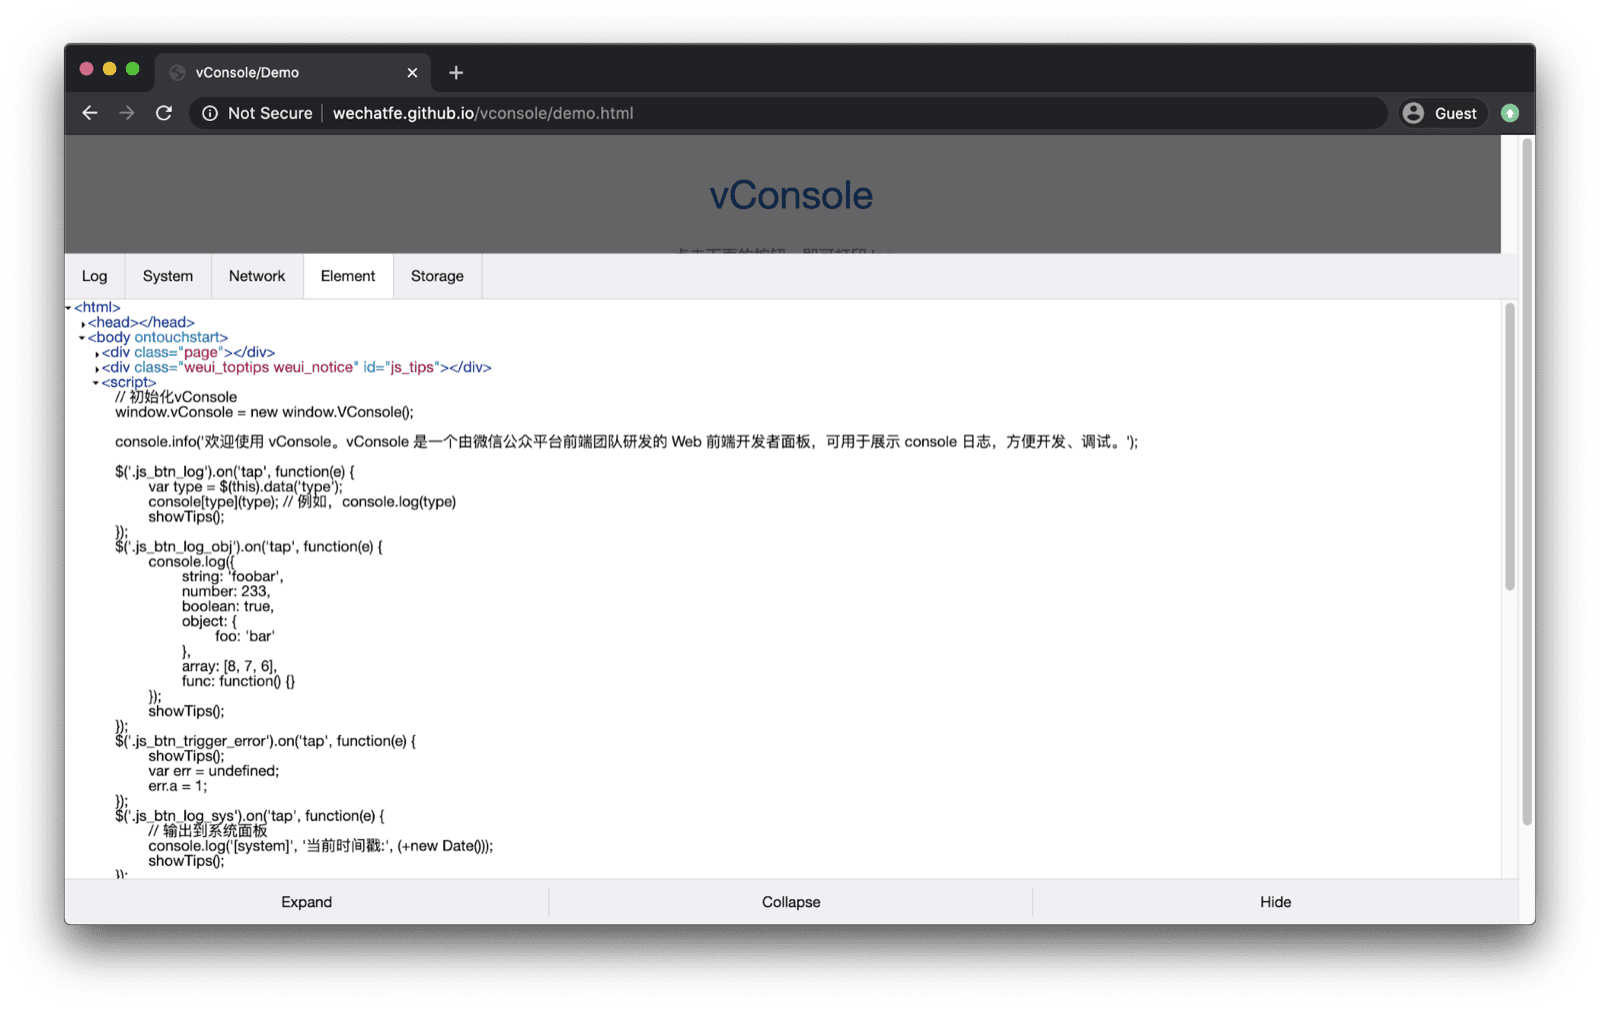 vConsole 데모 앱입니다. 하단에서 vConsole이 열리고 로그, 시스템, 네트워크, 요소, 저장소에 관한 탭이 있습니다.